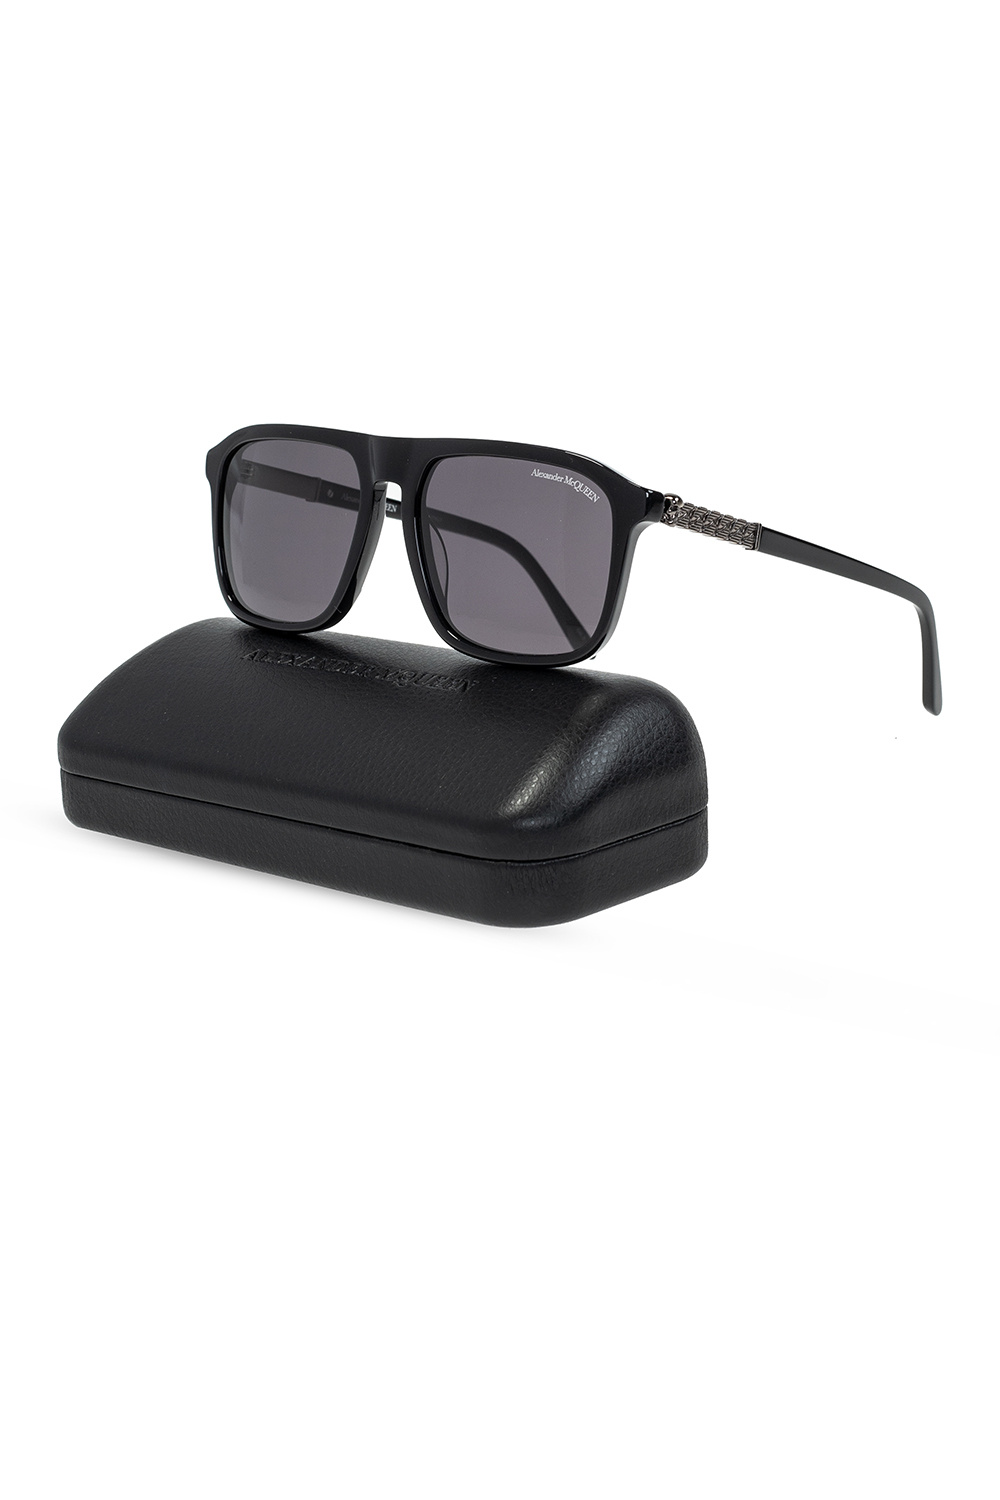 Alexander McQueen tom ford eyewear tortoiseshell square frame sunglasses item